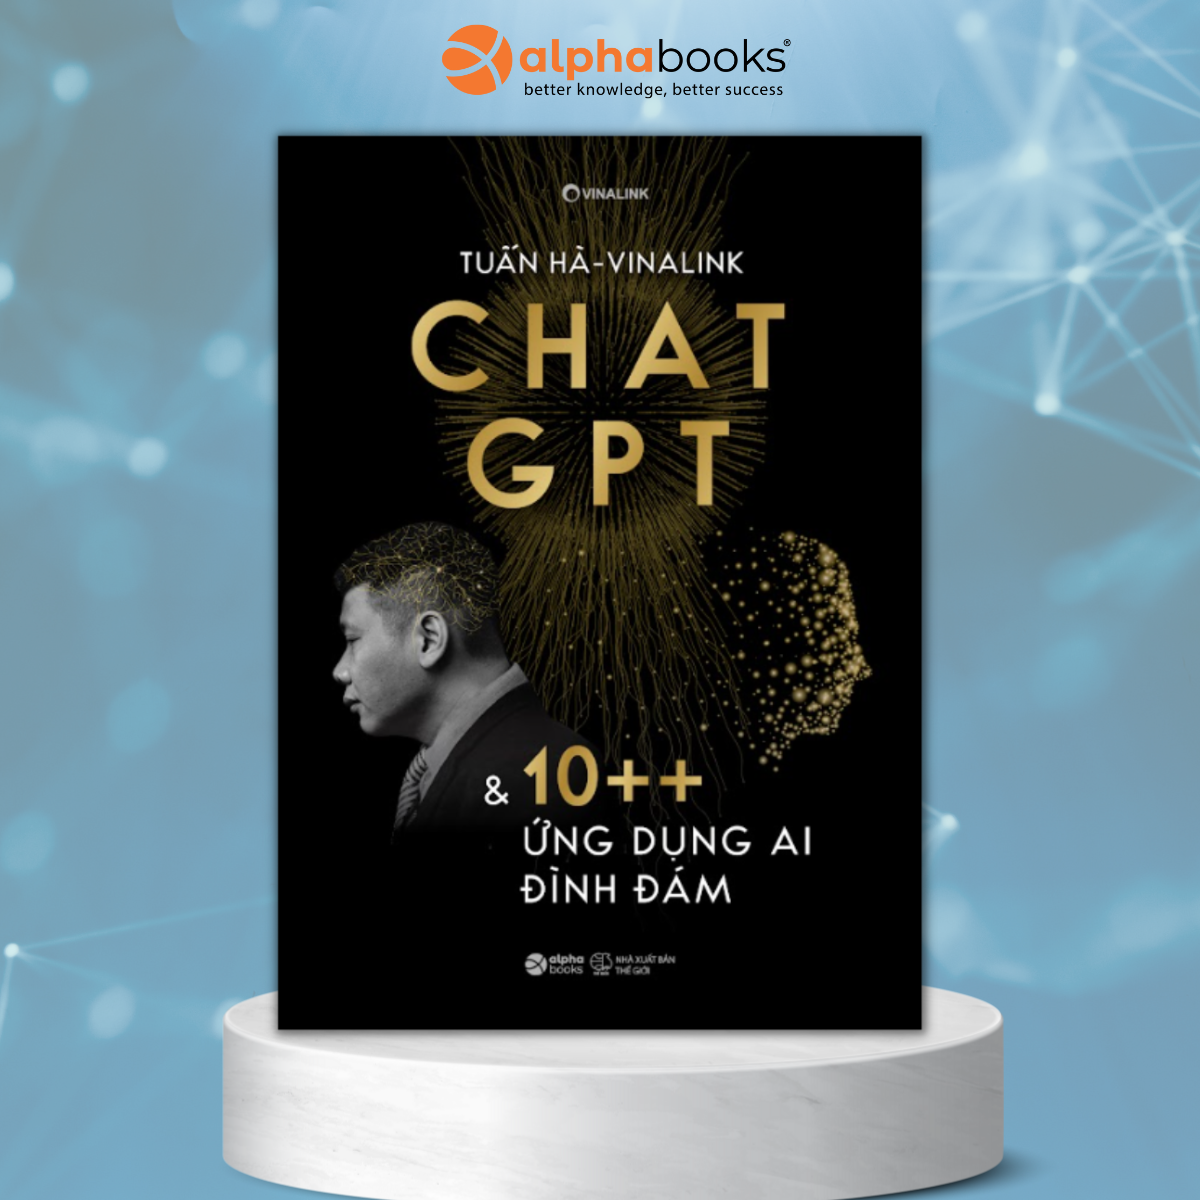 Chat GPT & 10++ Ứng Dụng AI Đình Đám (Tuấn Hà - Vinalink)